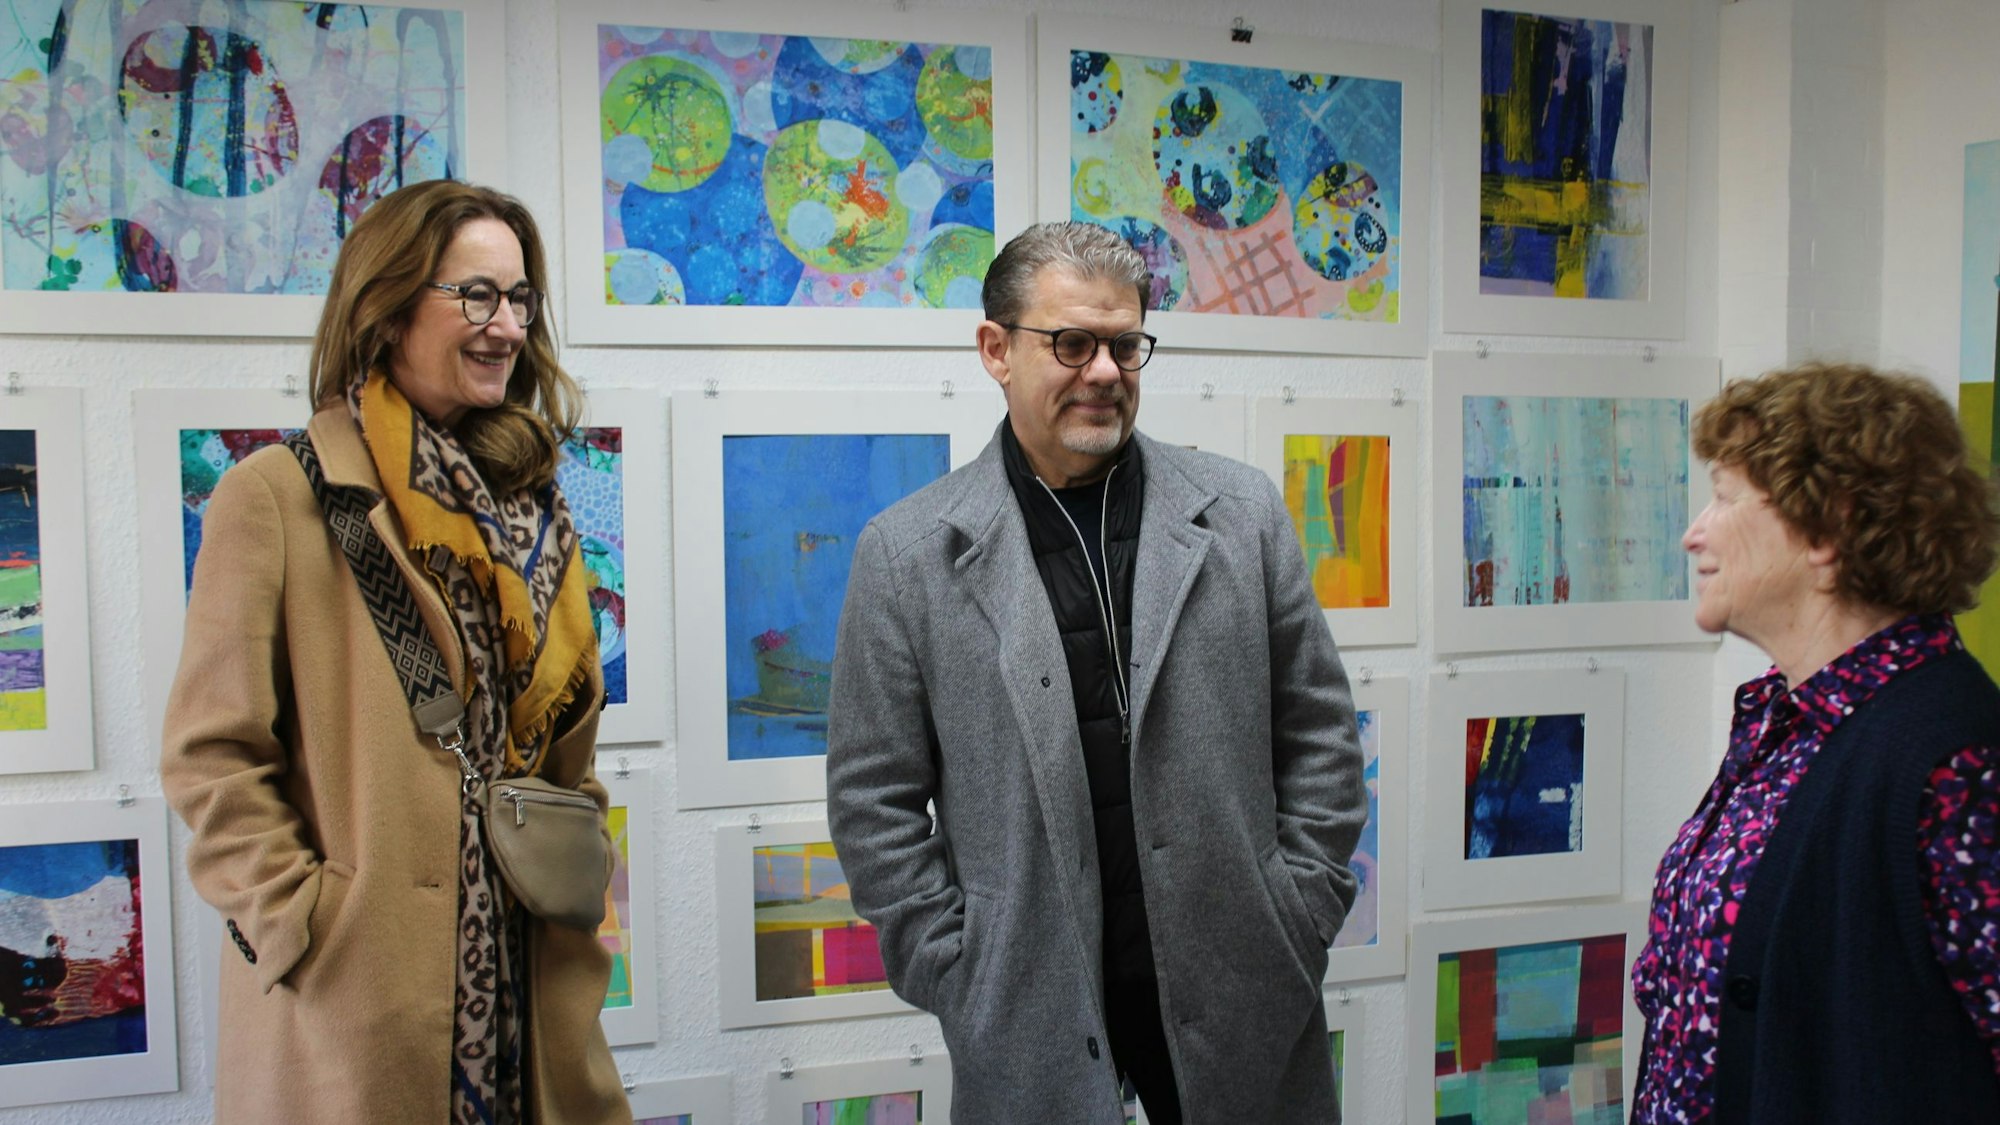 Drei Menschen stehen vor einer Wand mit Kunstwerken.